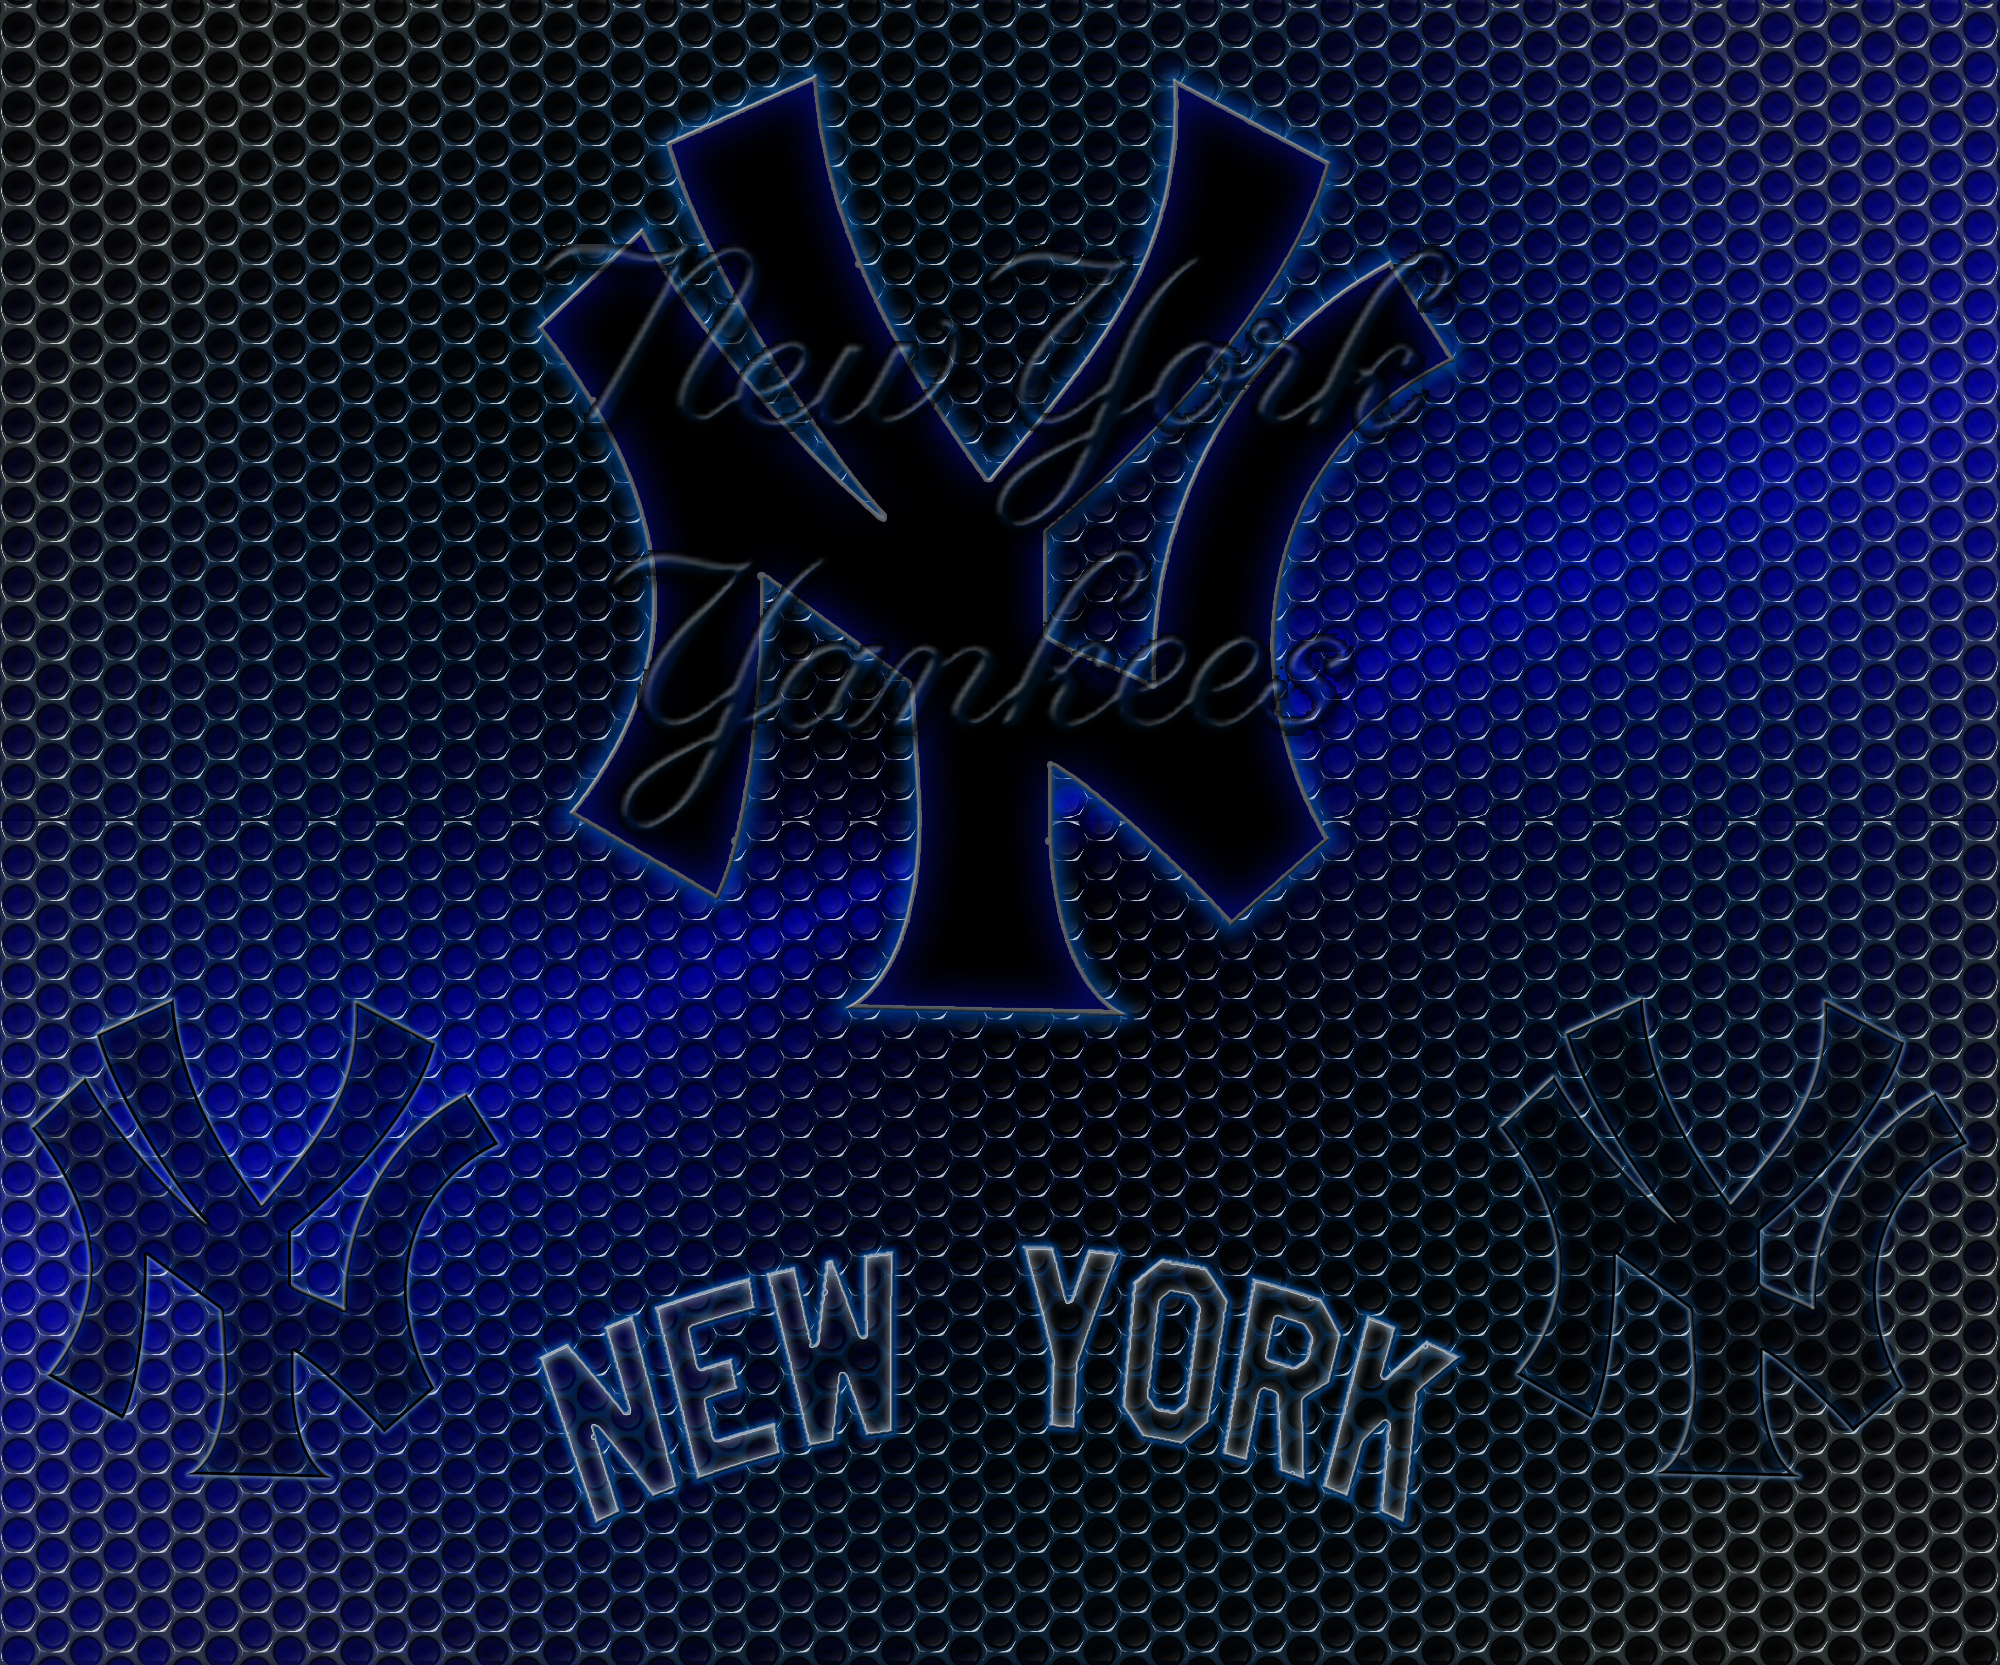 뉴욕 양키스 아이폰 배경 화면,검정,푸른,폰트,강청색,본문